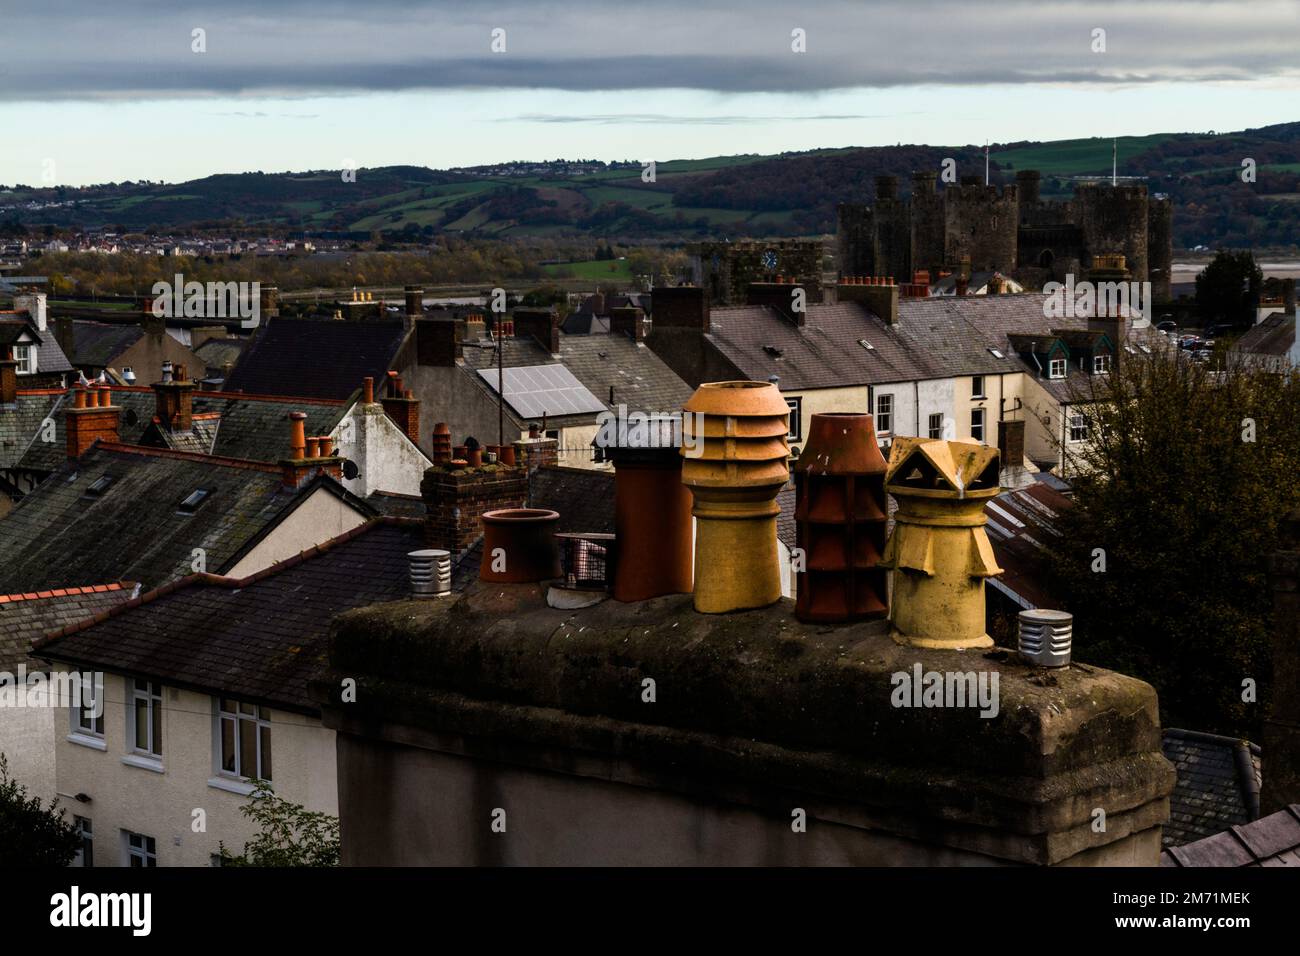 Rangée de pots de cheminée insolite château en arrière-plan. Conwy Town, nord du pays de galles, paysage Banque D'Images